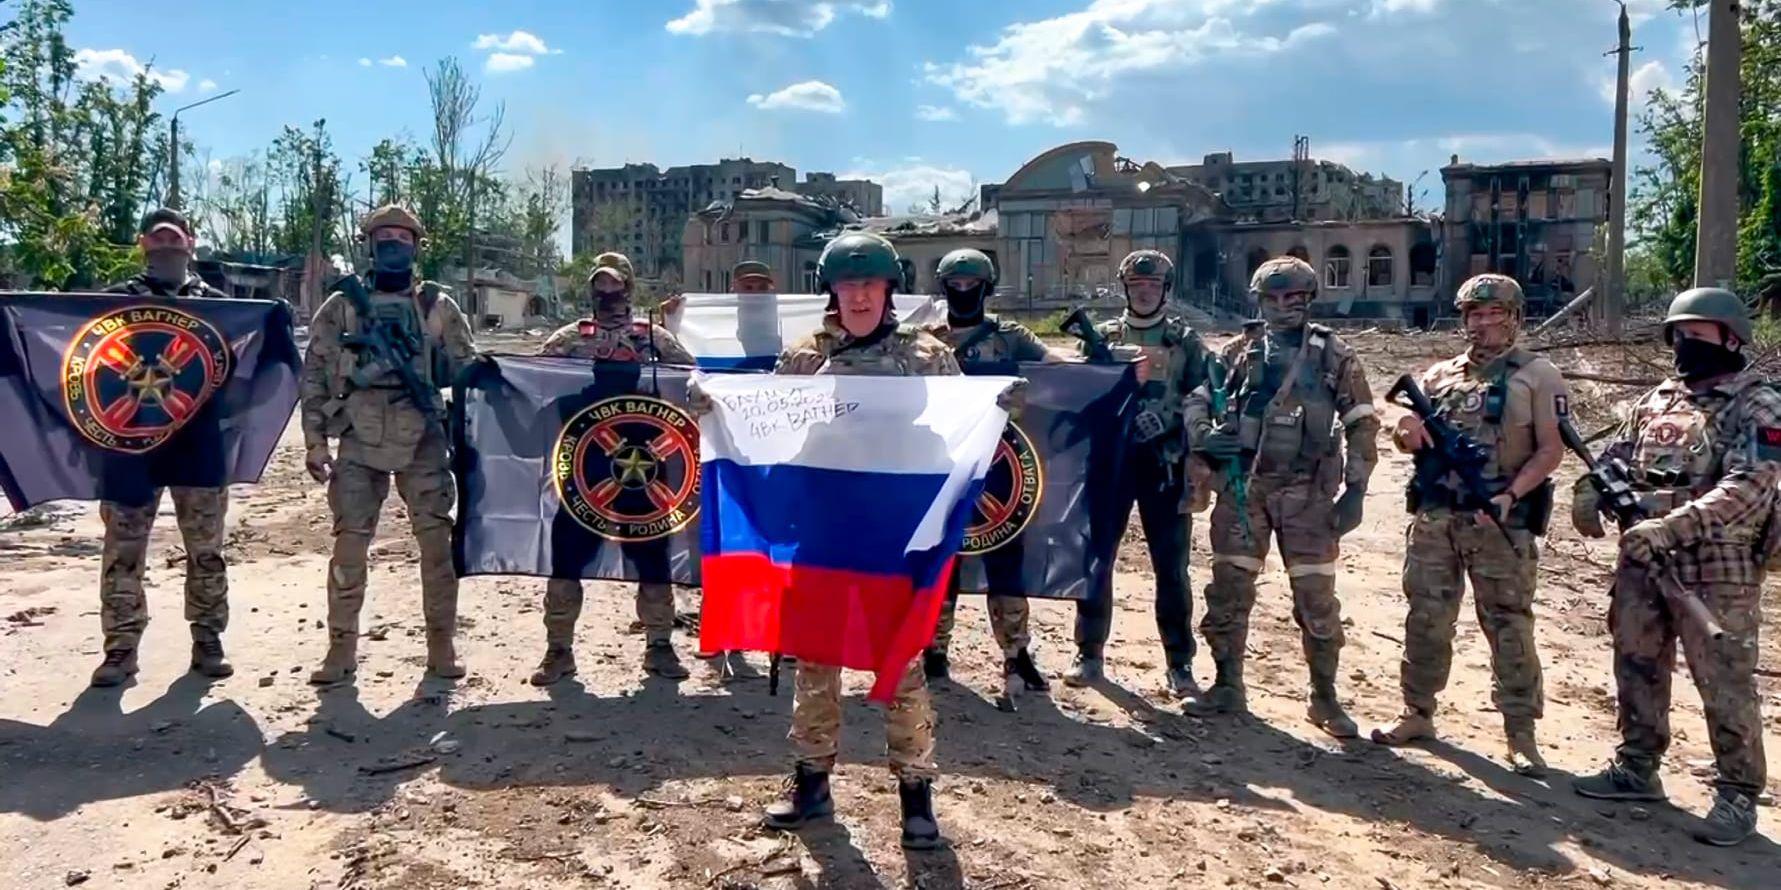 Jevgenij Prigozjin, som håller den ryska flaggan, poserar med soldater i Bachmut. Bilden distribuerades den 20 maj. Arkivbild.